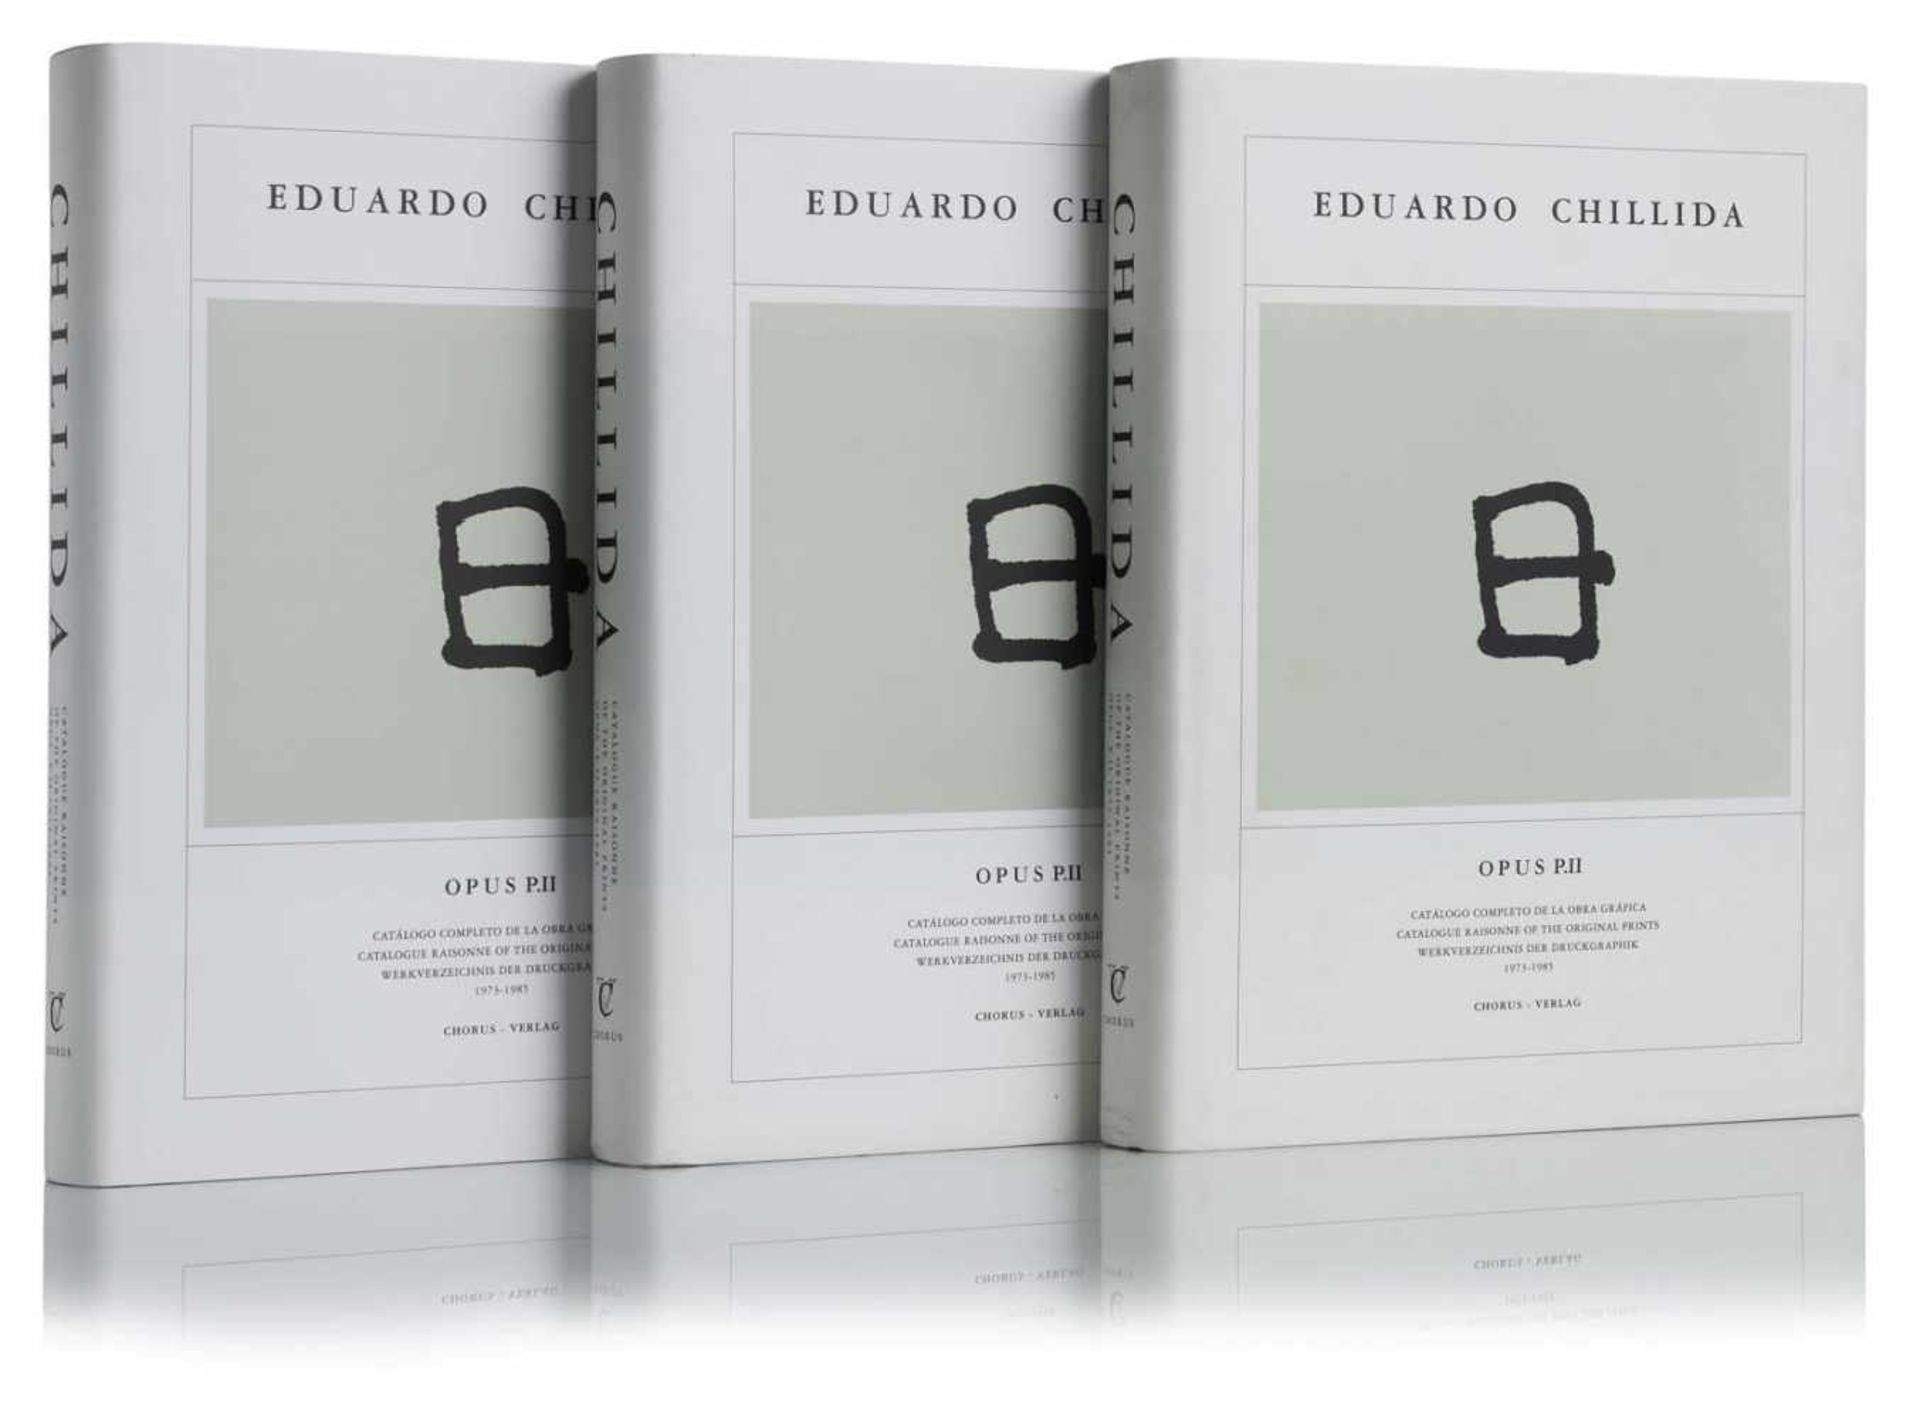 Chillida, EdouardoSan Sebastián, 1924 - 200232 x 24 x 4 cmDrei Bücher: "Opus P.II, Werkverzeichnis